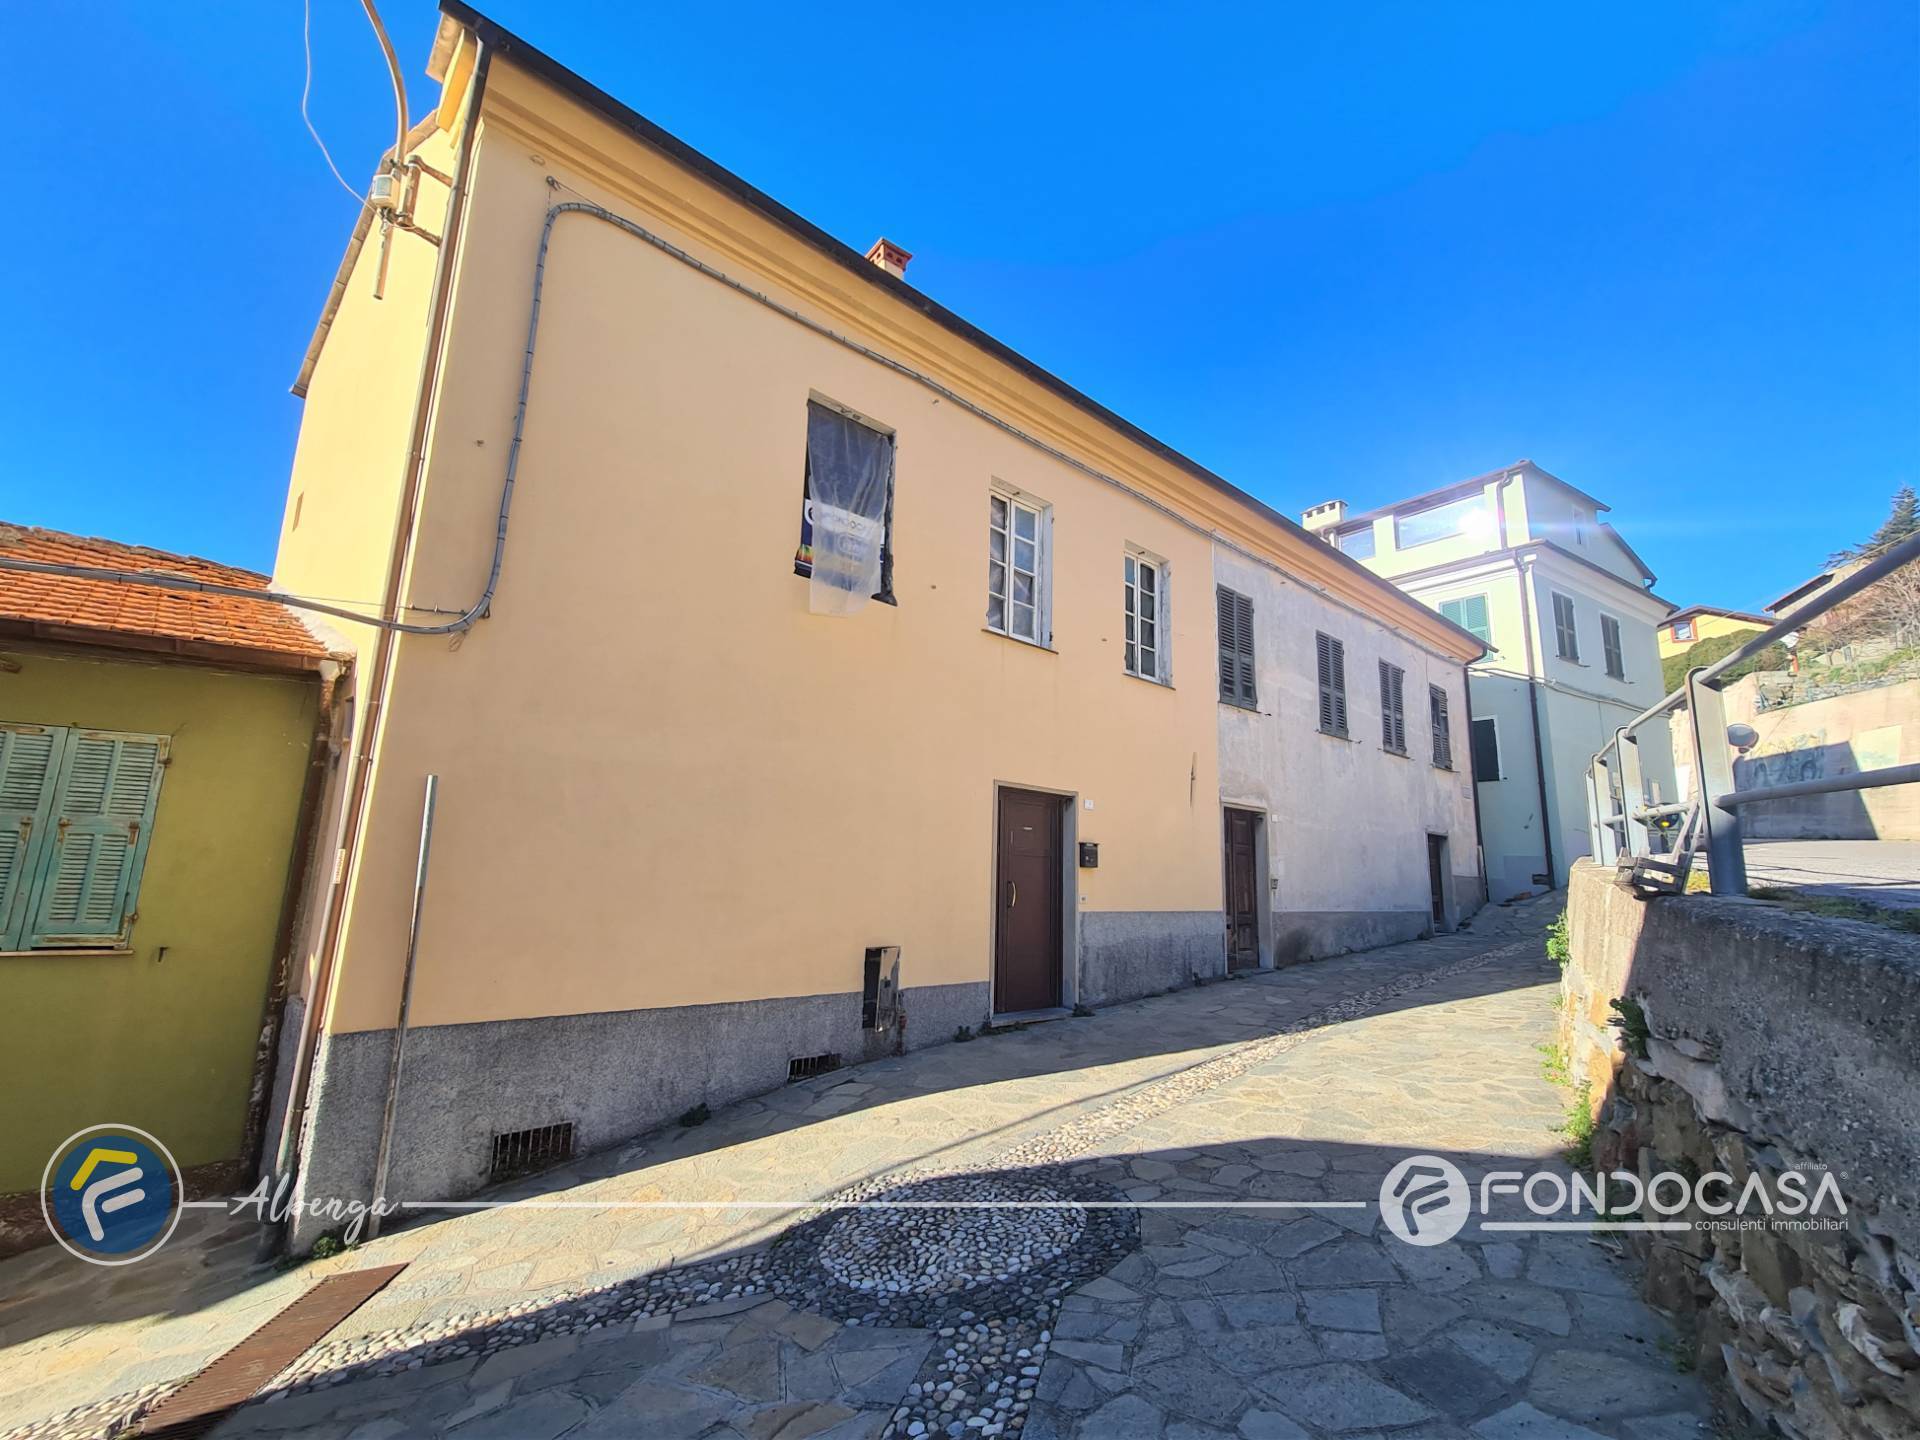 Rustico / Casale in vendita a Arnasco, 4 locali, prezzo € 70.000 | PortaleAgenzieImmobiliari.it